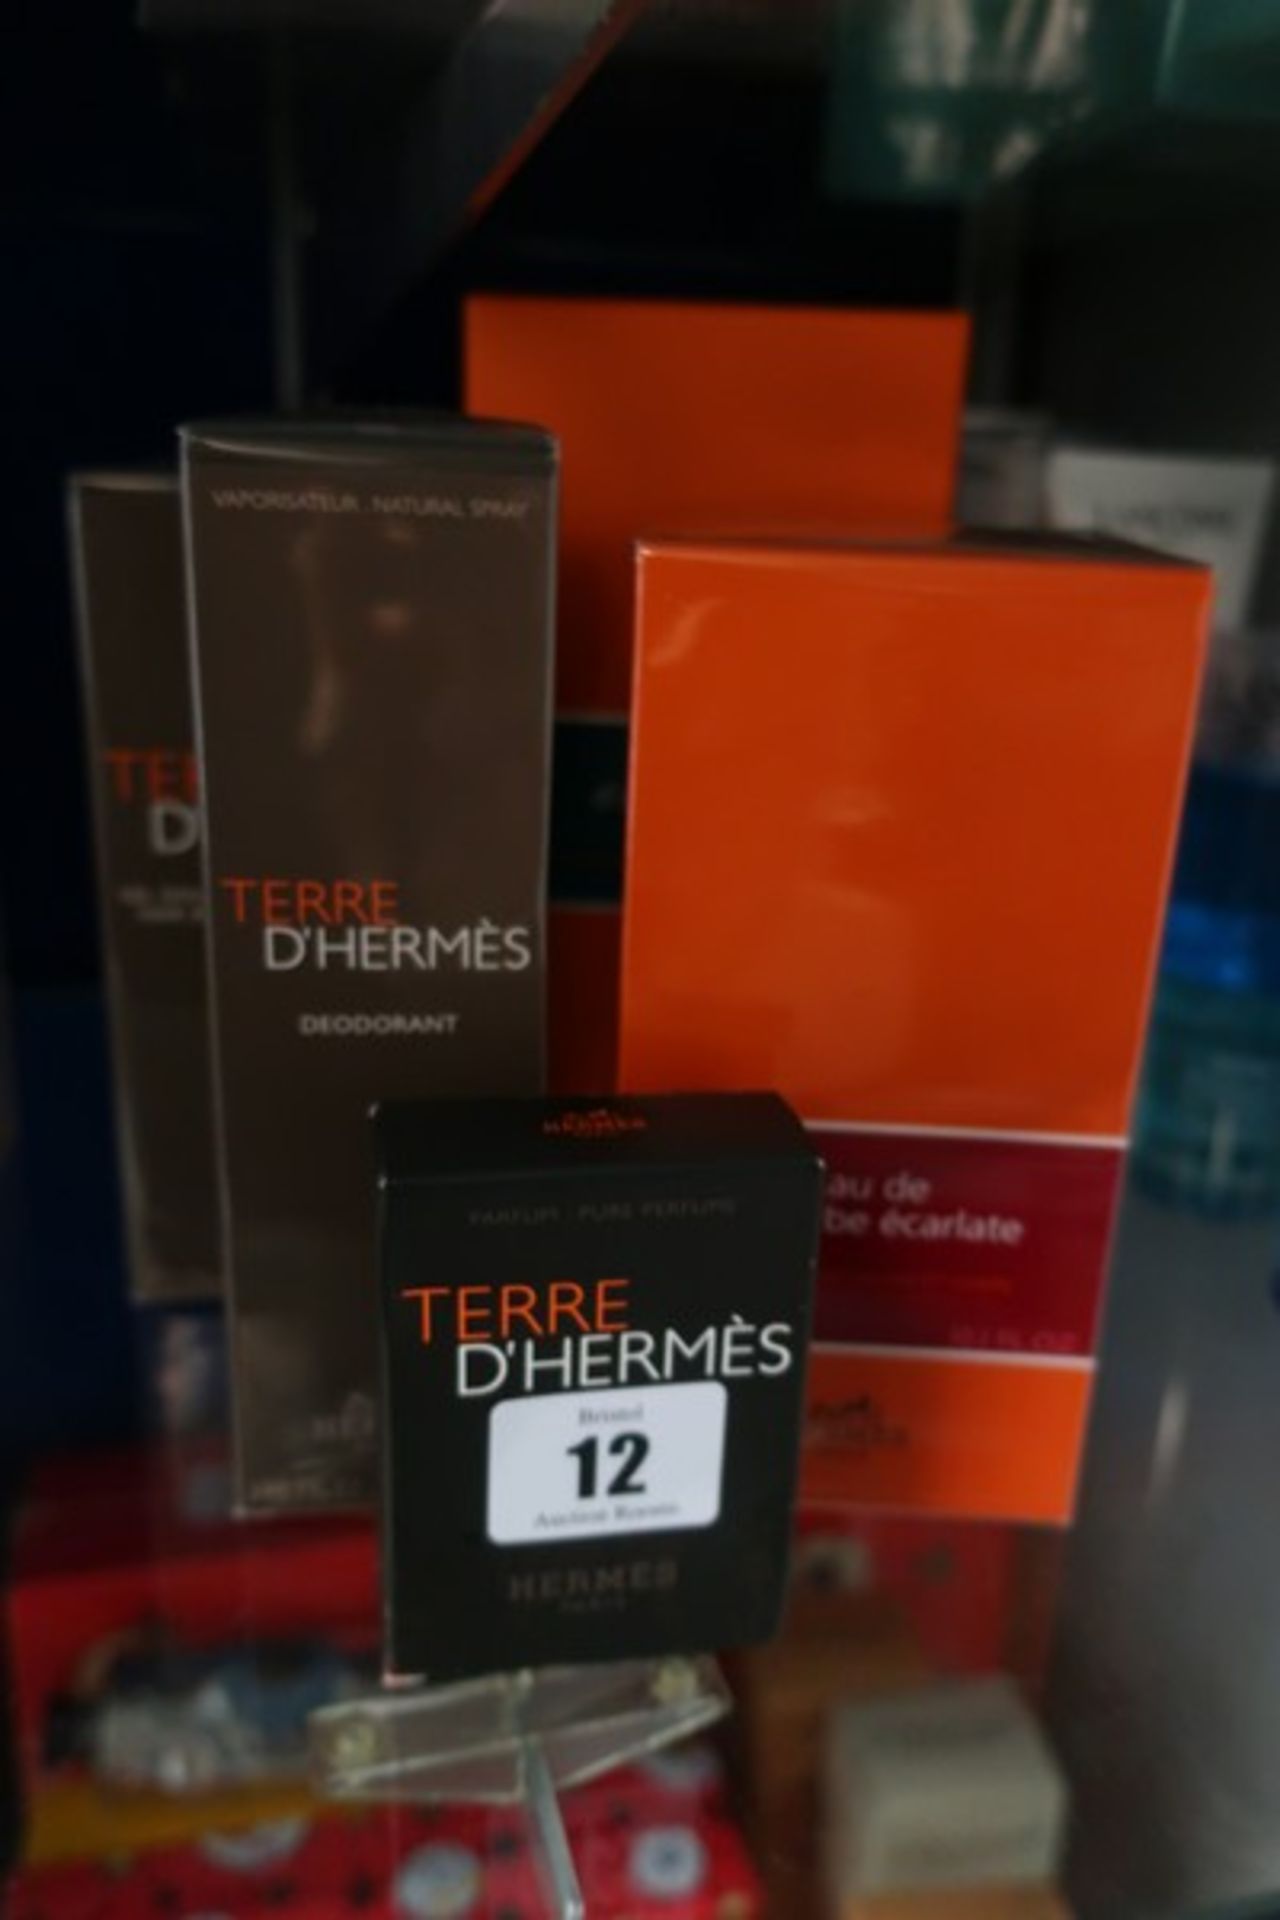 Five as new Hermes products; Eau d'orange verte eau de cologne (200ml), Eau de rhubarbe ecarlate